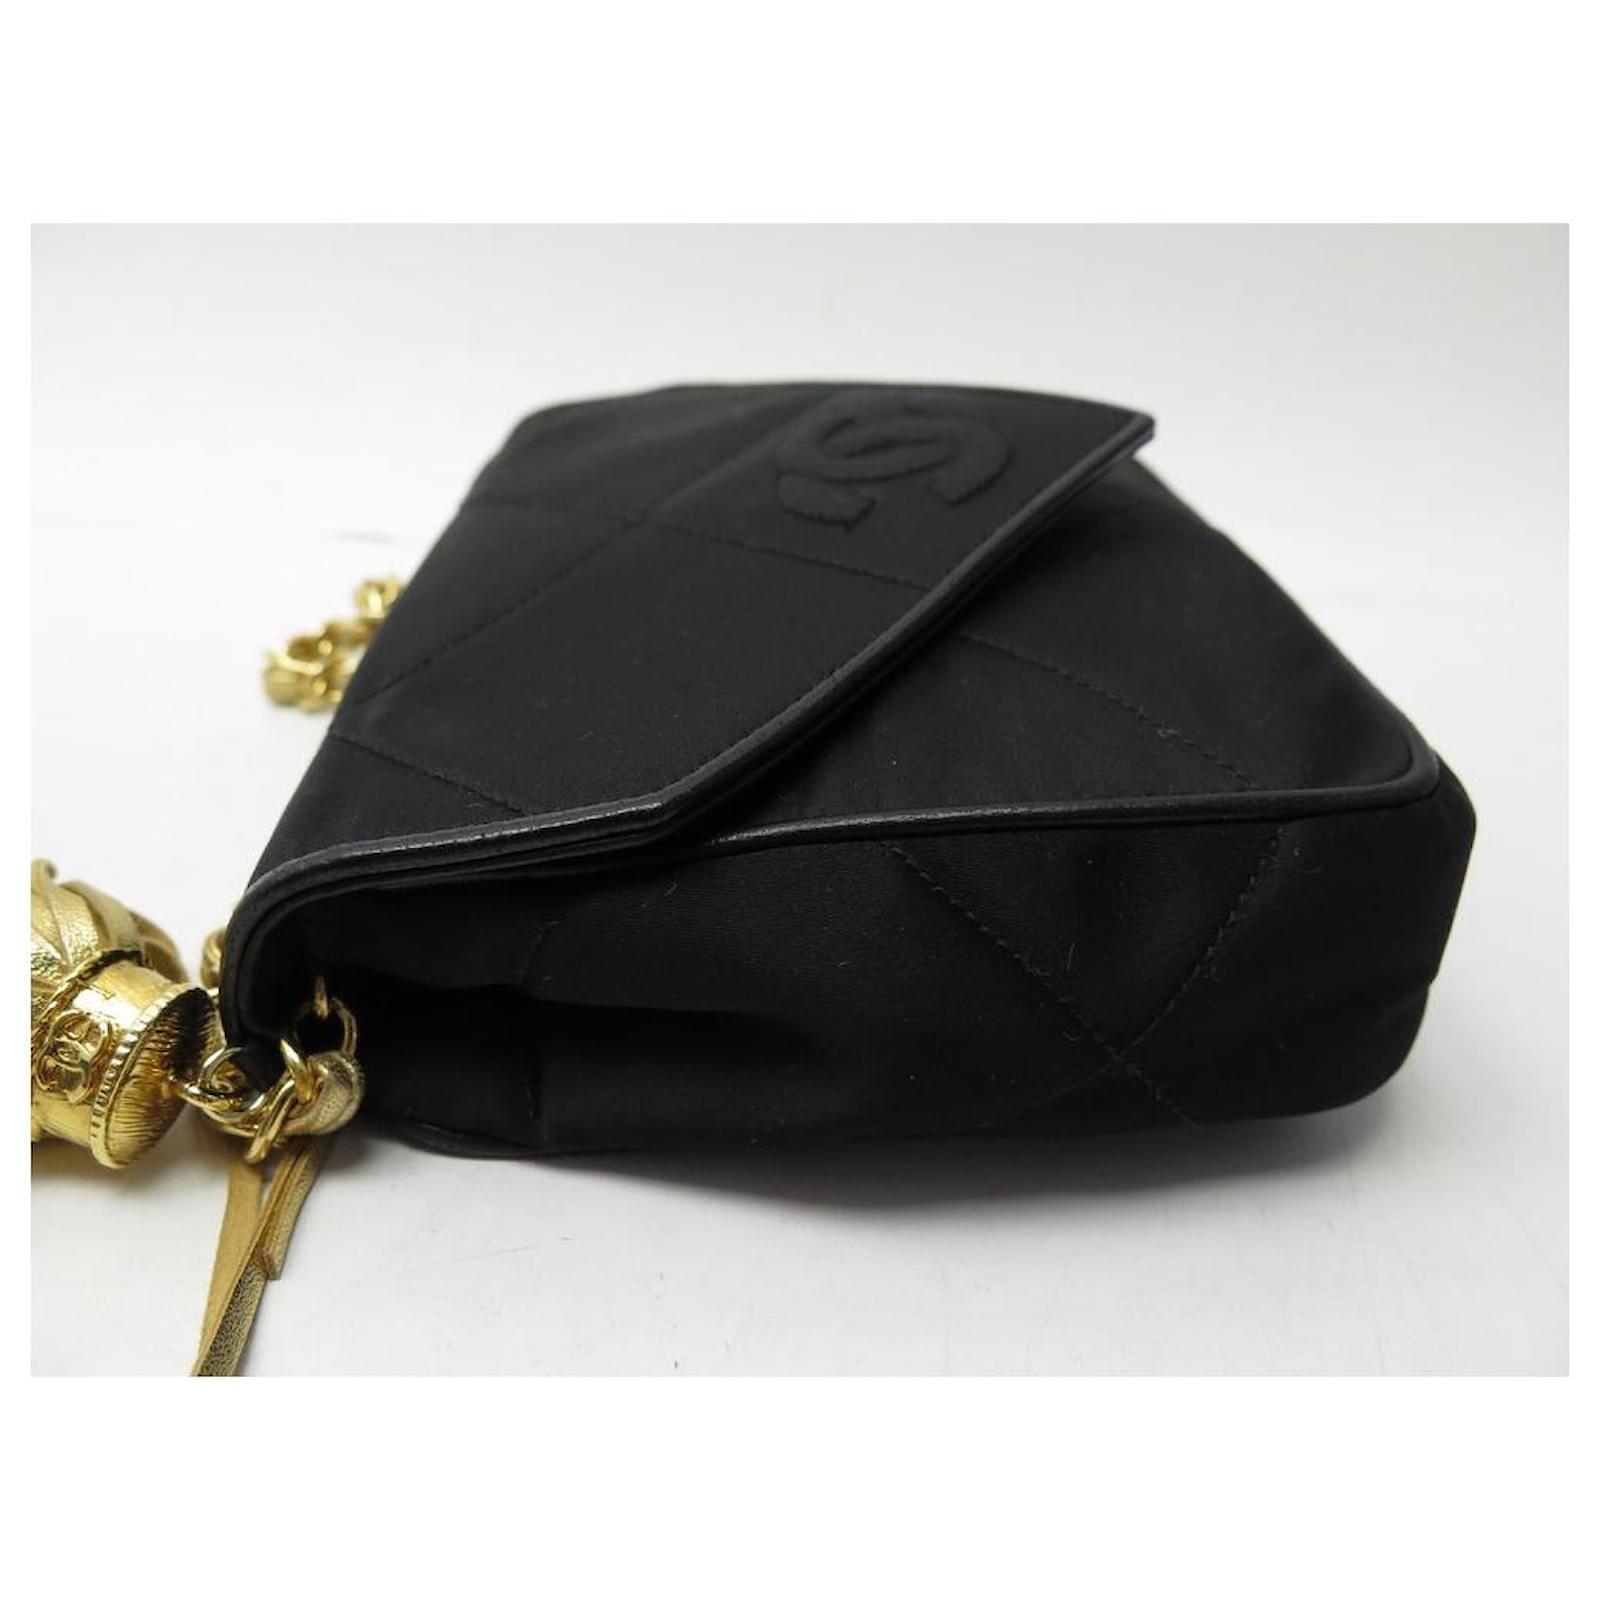 gold and black chanel bag vintage